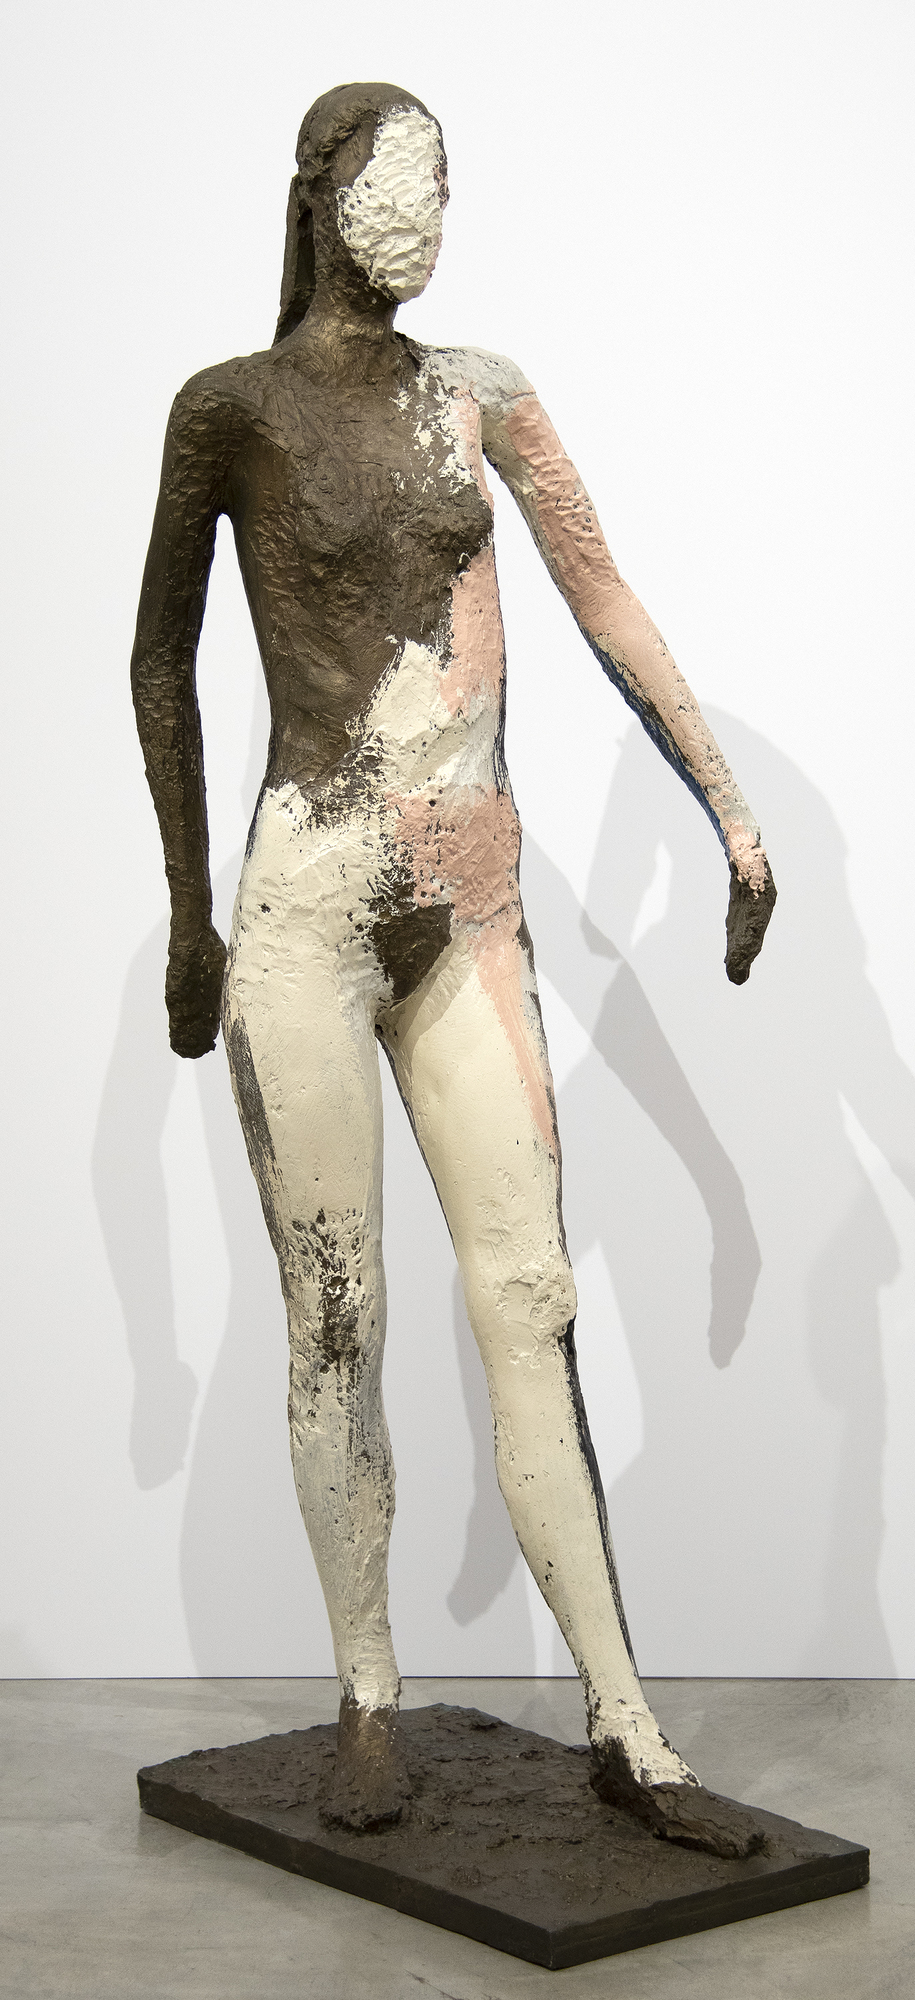 Manuel Neri était une figure centrale du Bay Area Figurative Movement dans les années 1960. Au lieu de formes abstraites, le groupe mettait l&#039;accent sur l&#039;émotion à travers la puissance de la forme humaine. La présente œuvre, &quot;Sans titre&quot; (1982), explore la forme féminine à l&#039;échelle réelle.  Tout au long de ses 60 ans de carrière, Neri a préféré travailler avec un seul modèle, Maria Julia Klimenko. L&#039;absence de visage dans de nombreuses sculptures ajoute un élément de mystère et d&#039;ambiguïté. Dans &quot;Sans titre&quot;, la composition est axée sur la structure et la forme de la figure.  Manuel Neri est représenté dans de nombreuses collections de musées à travers le monde, notamment à la Addison Gallery/Phillips Academy, à la Anderson Collection de l&#039;université de Stanford, à l&#039;Art Institute of Chicago, au Cantor Arts Center de l&#039;université de Stanford, au Cincinnati Art Museum, au Crocker Art Museum de Sacramento, en Californie, au Denver Art Museum, au El Paso Museum of Art, au Texas, aux Fine Arts Museums de San Francisco, aux Harvard University Art Museums, au Hirshhorn Museum and Sculpture Garden de Washington, D. C., au Honolulu Museum of Art, à l&#039;Université de Californie du Sud, à l&#039;Université de Californie du Sud et à l&#039;Université de Californie du Sud.C. ; Honolulu Museum of Art, The Metropolitan Museum of Art, New York et la National Gallery of Art, Washington, DC.